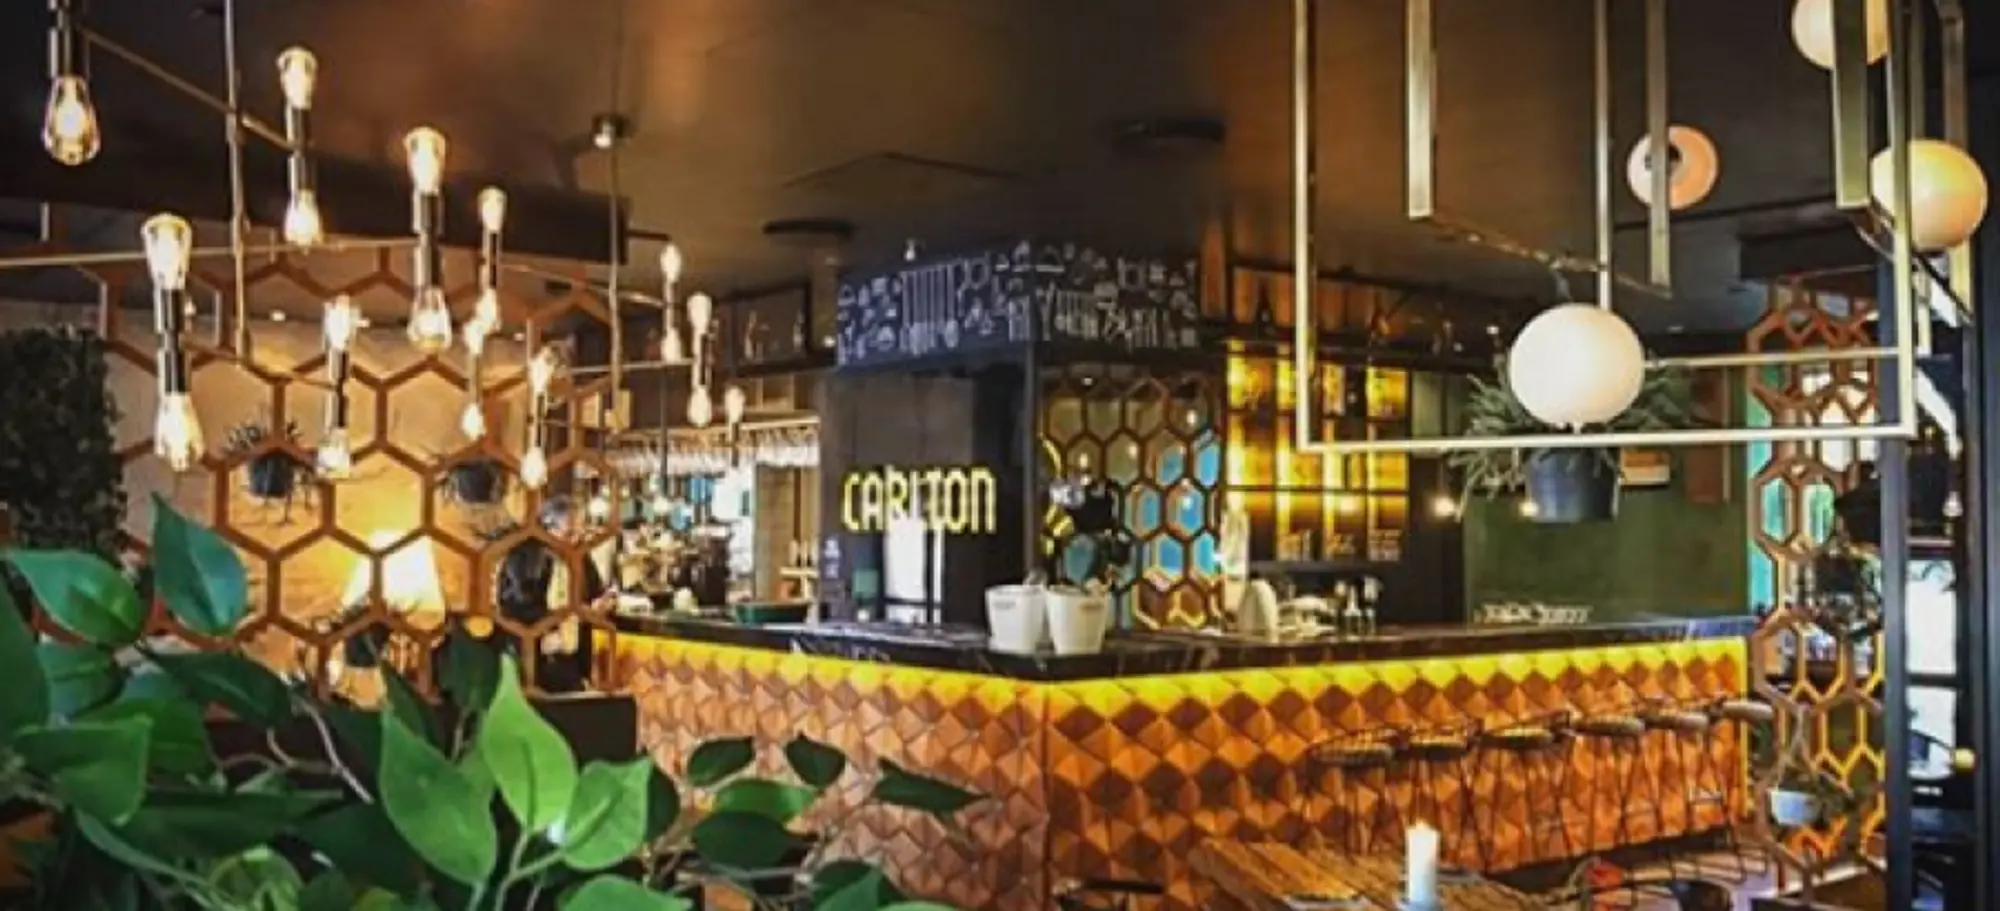 Menu image of Restaurant carlton's menu - københavn | cafe & bar in københavn